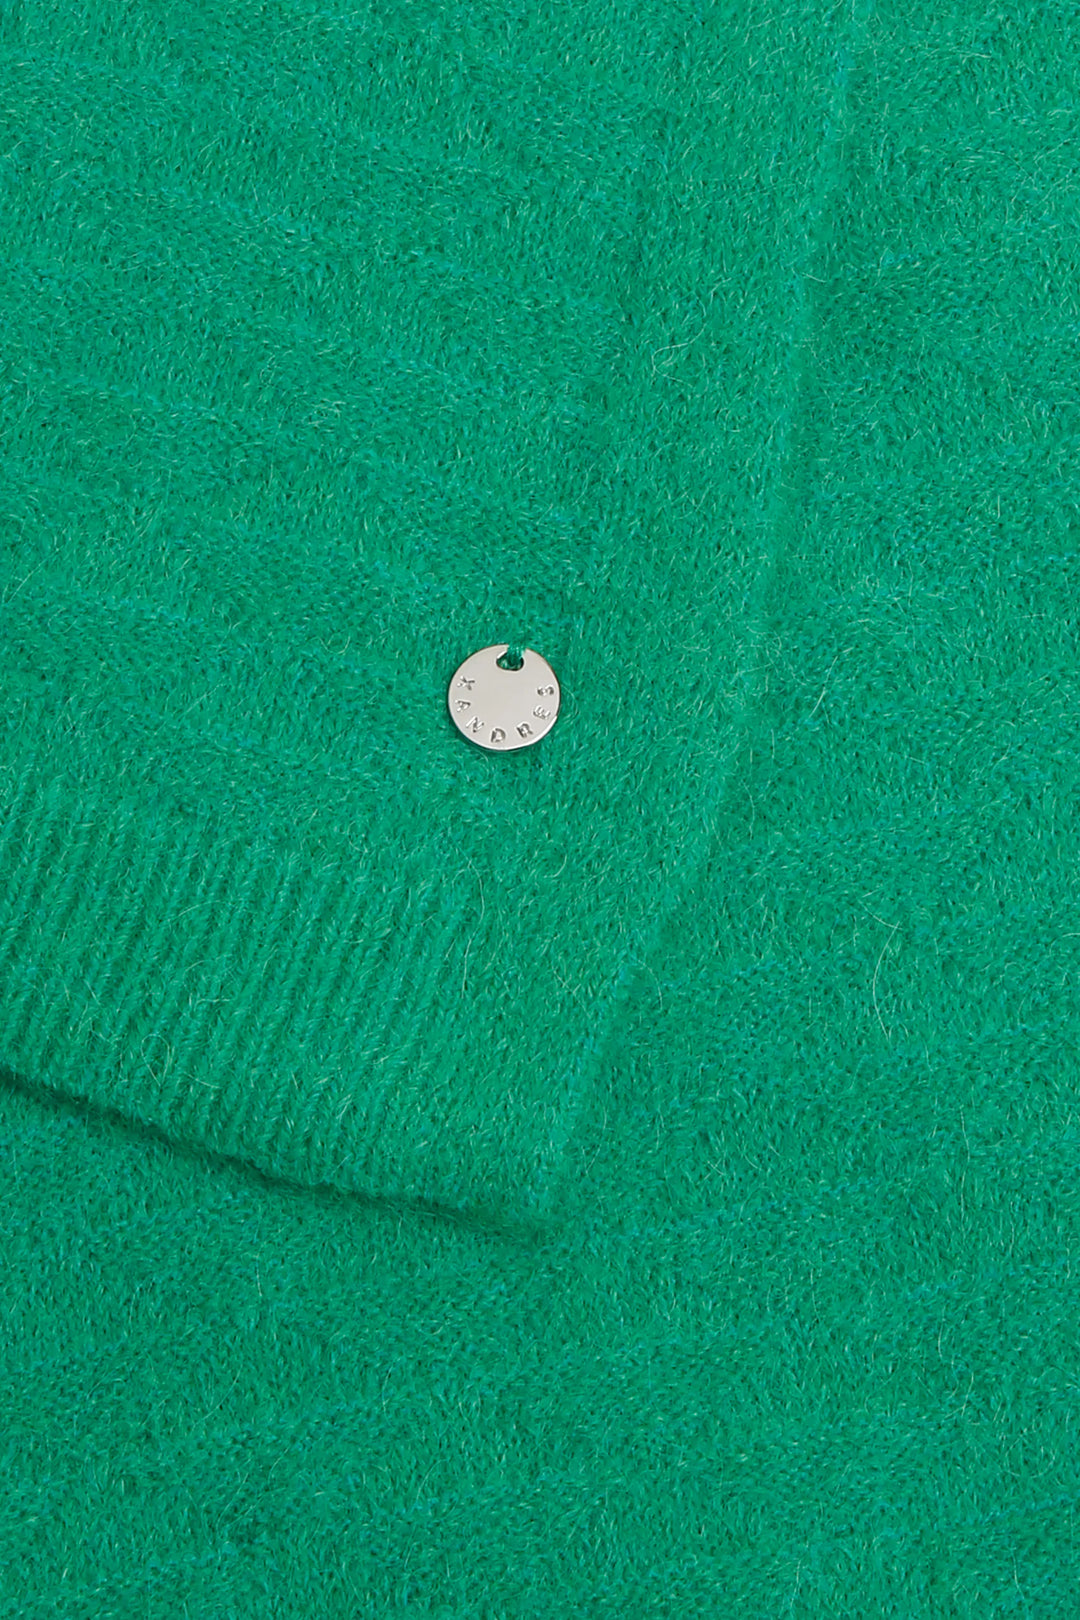 irish green sjaal van alpaca mix - xandres - alenar-groen - grote maten - dameskleding - kledingwinkel - herent - leuven